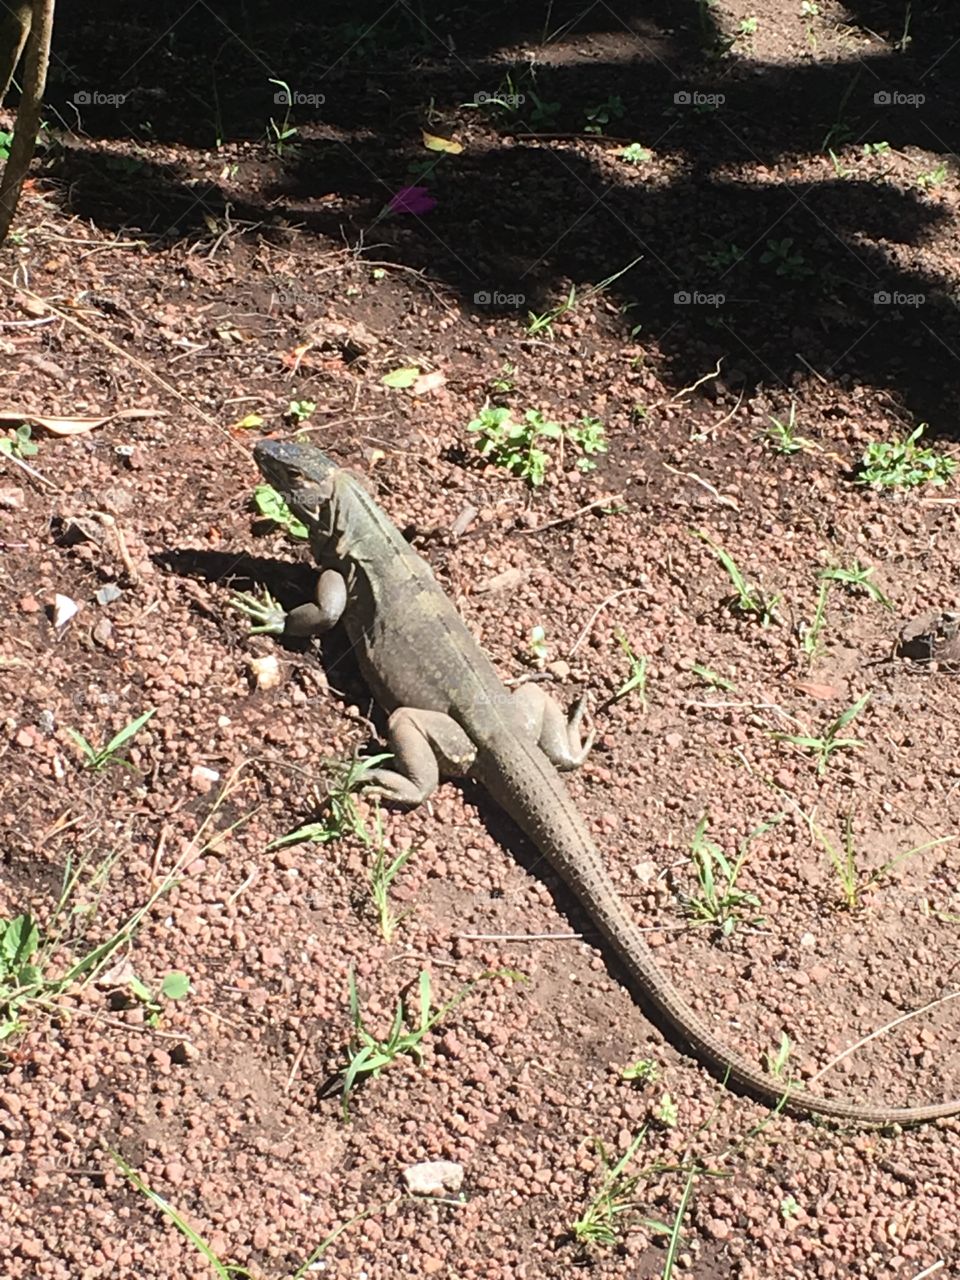 Lizard at Buena Vista in Costa Rica 